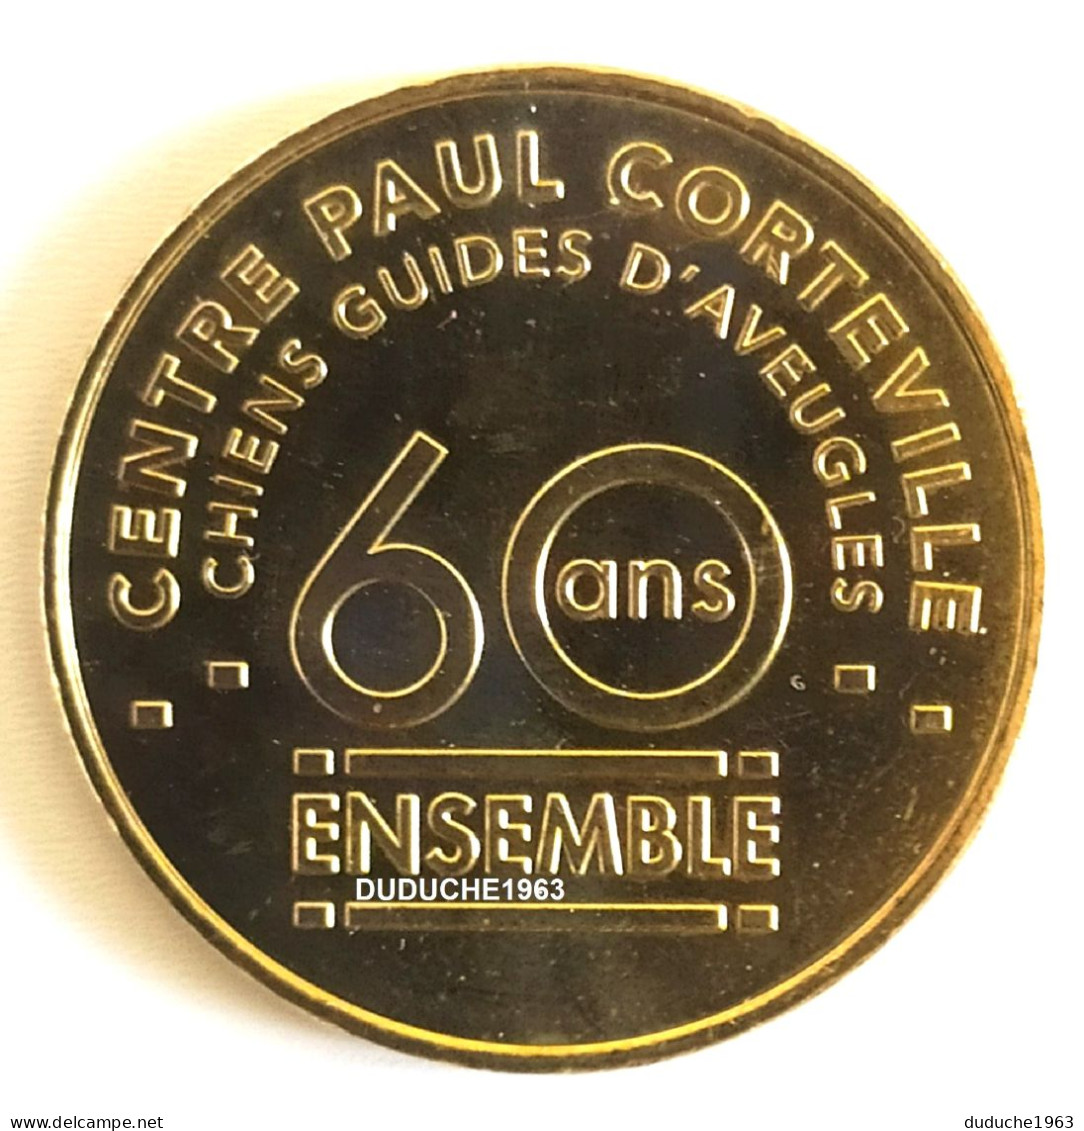 Monnaie De Paris 59. Roncq - Chiens Guides D'aveugles 2012 - 2012